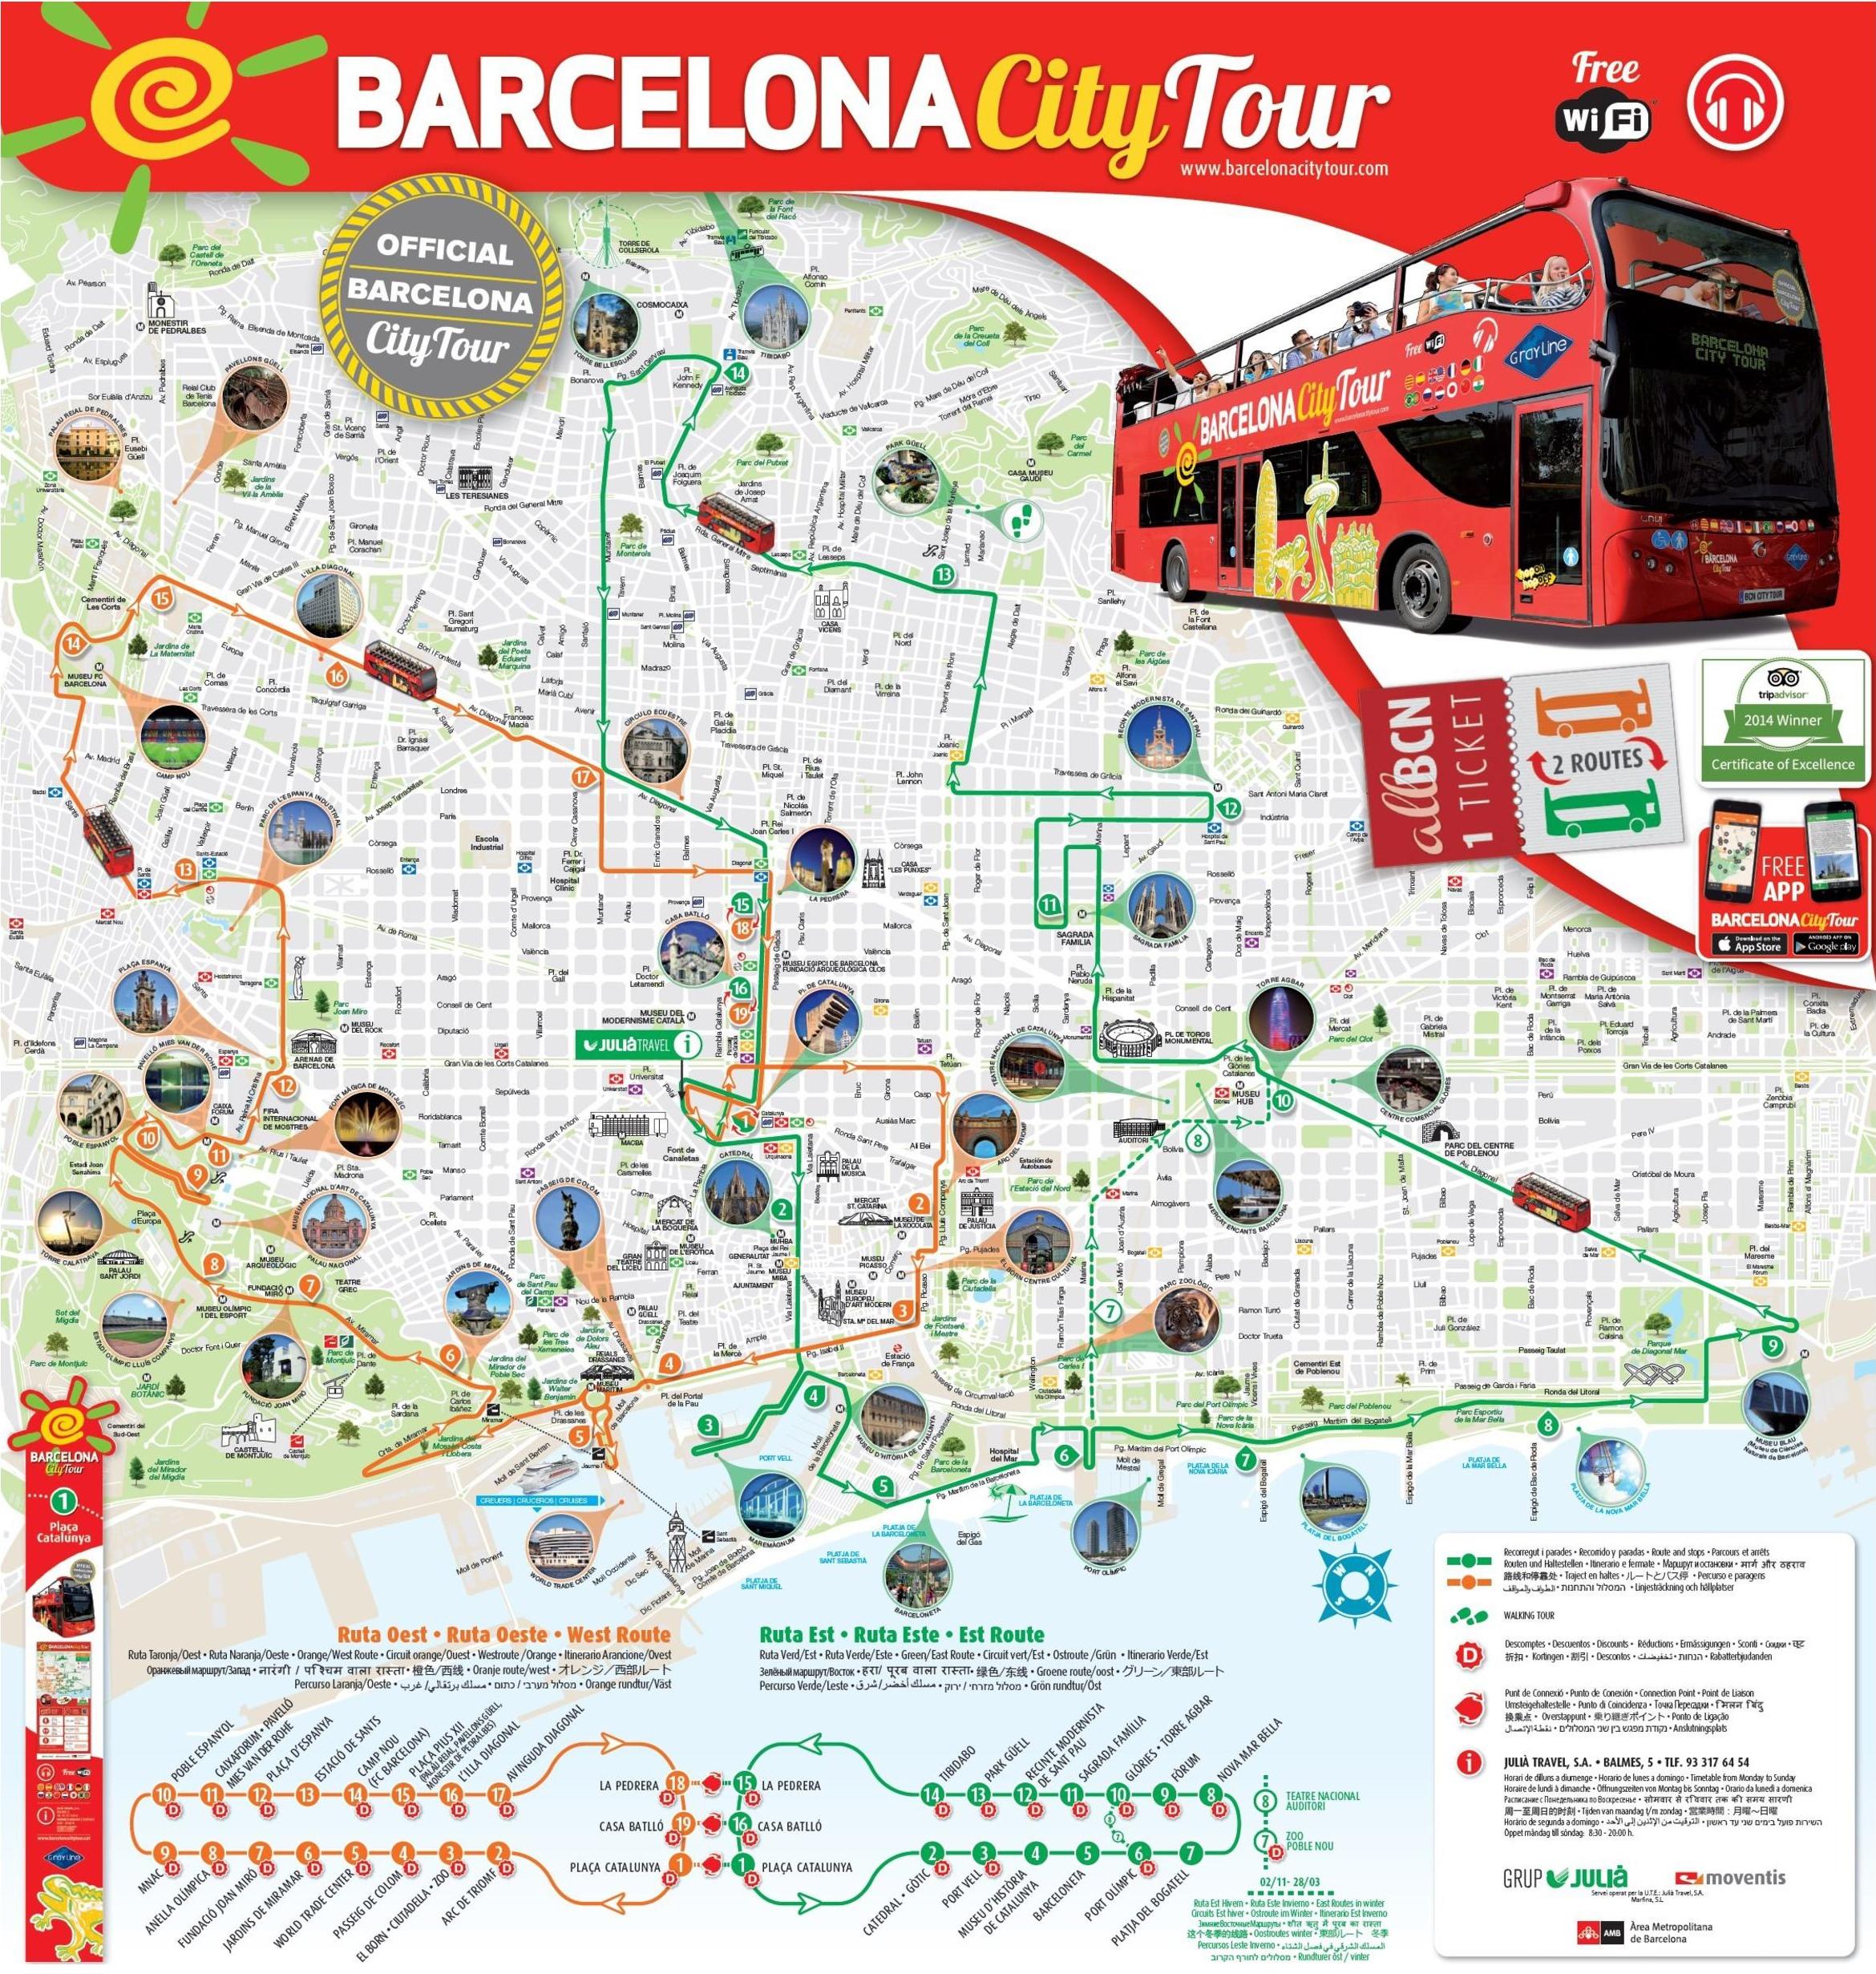 barcelona tourism app